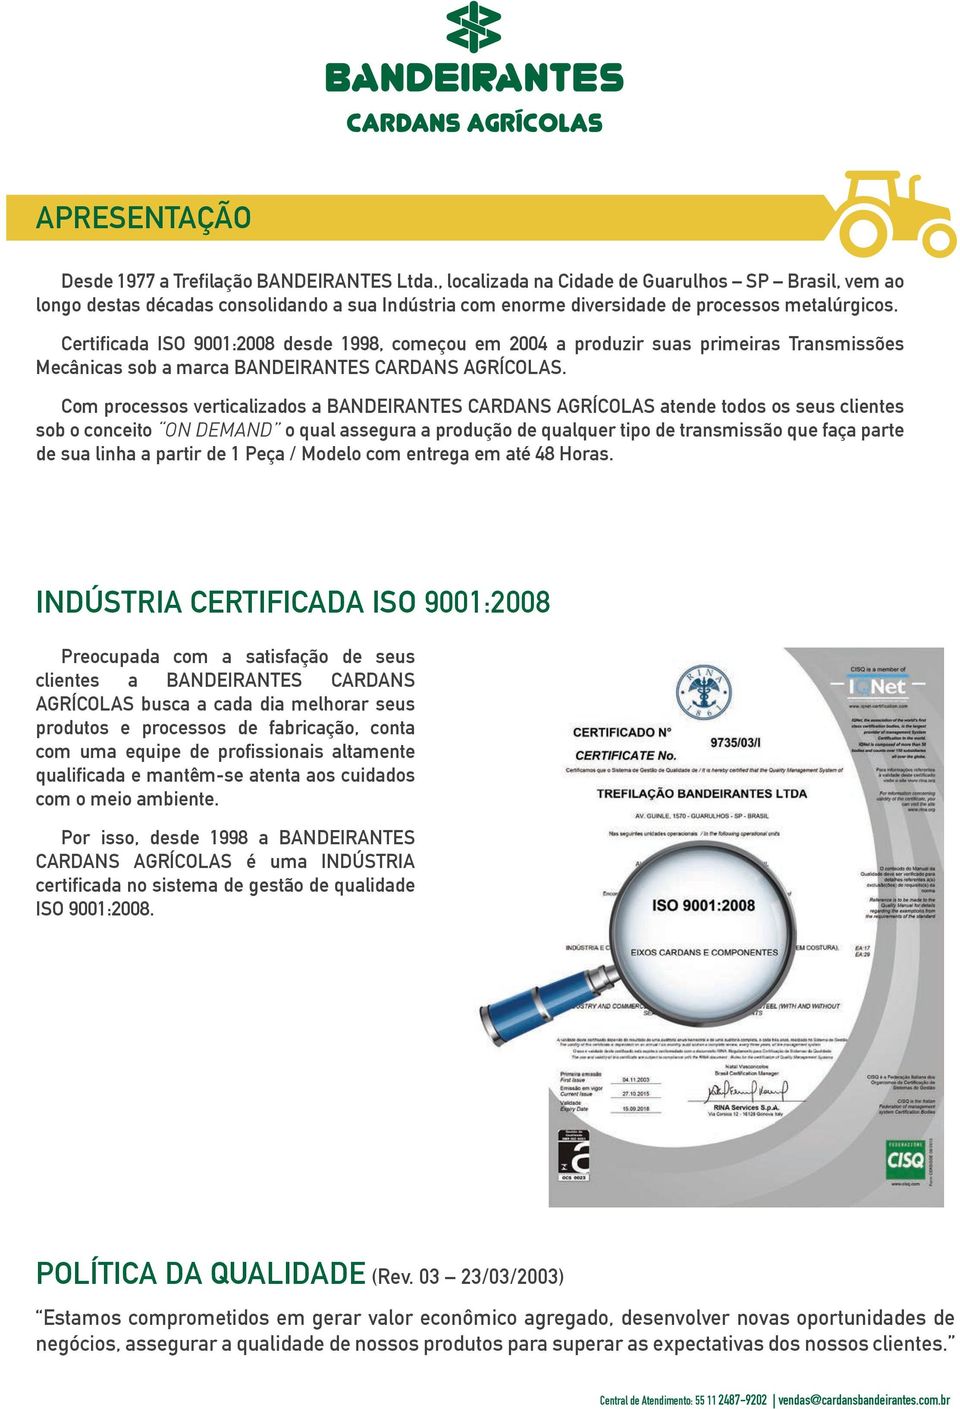 Certificada ISO 9001:2008 desde 1998, começou em 2004 a produzir suas primeiras Transmissões Mecânicas sob a marca BANDEIRANTES CARDANS AGRÍCOLAS.